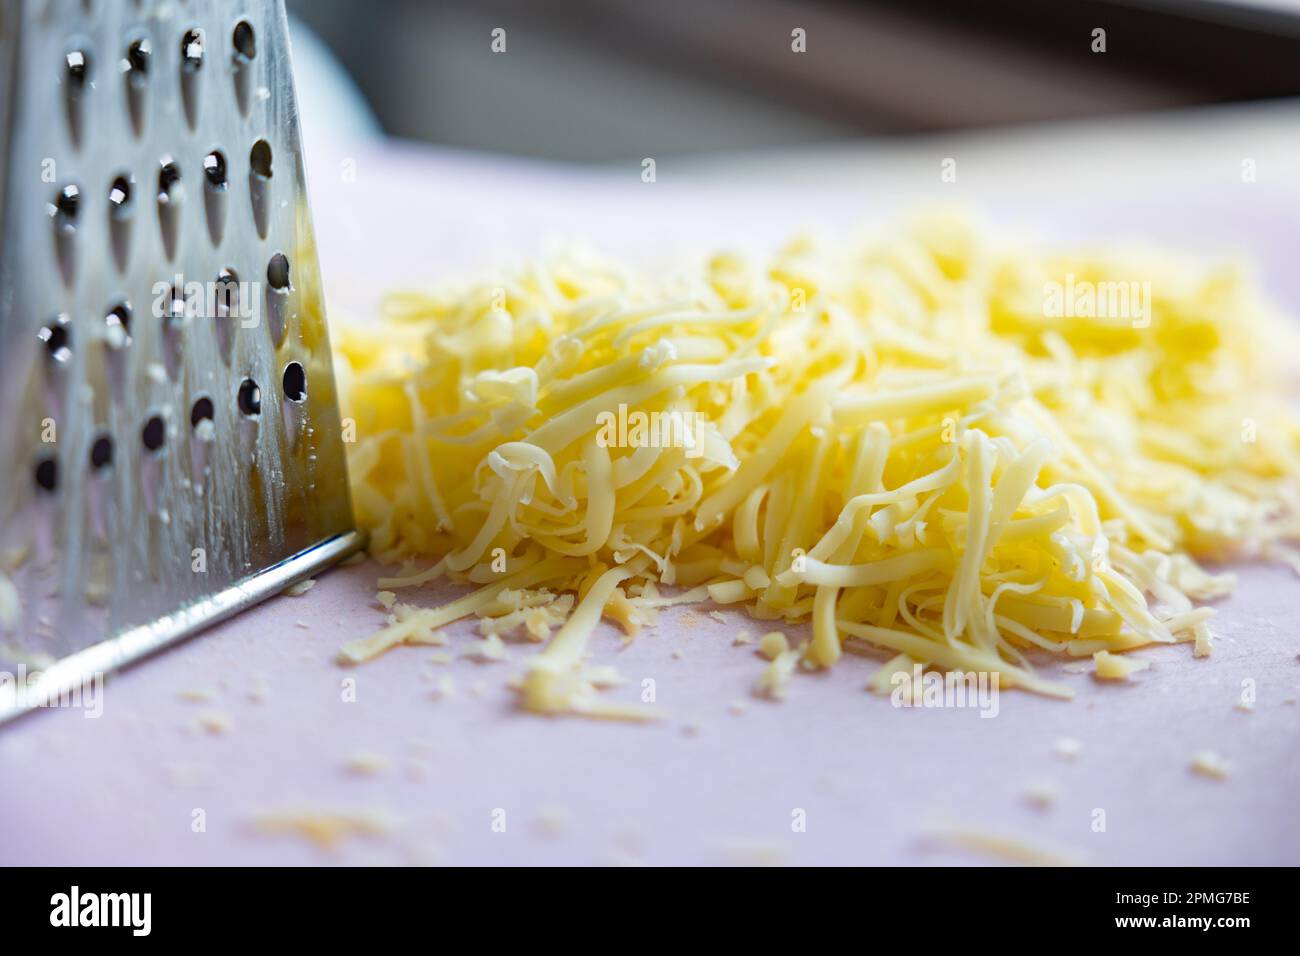 Fromage suisse râpé avec un râpe à boîte : mounds de fromage suisse finement râpé gros plan Banque D'Images